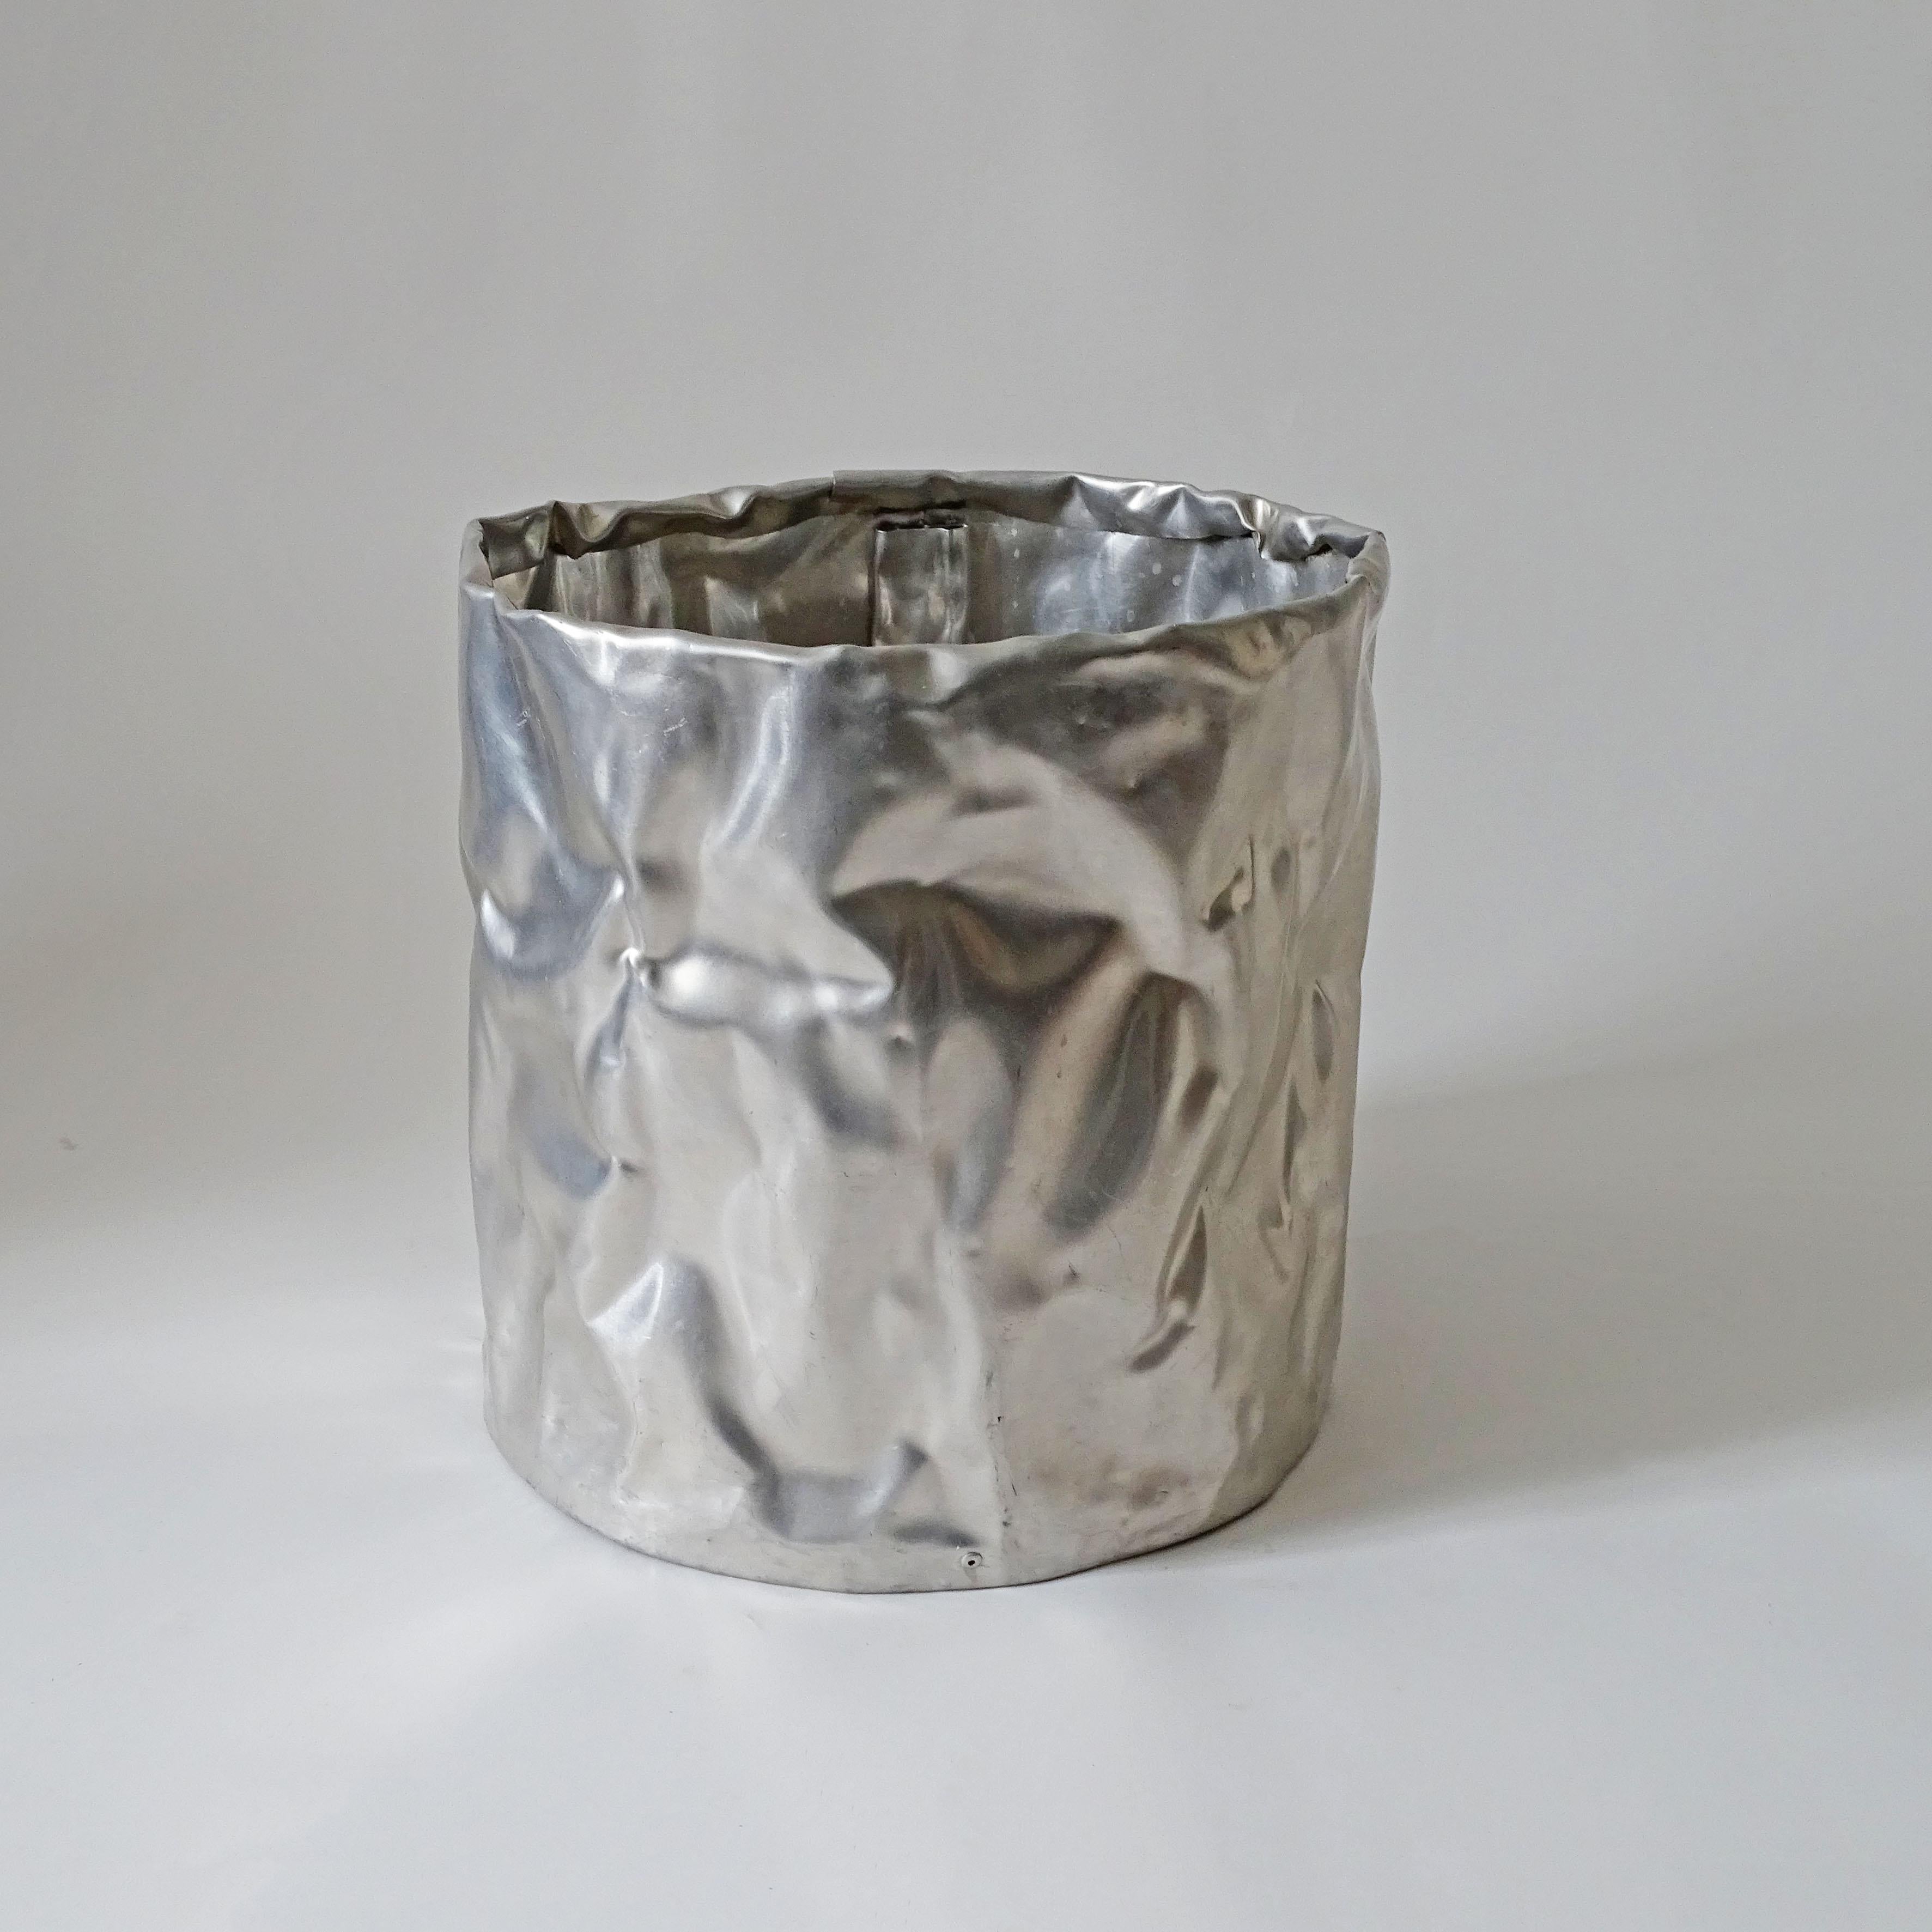 Une corbeille à papier en tôle d'aluminium rivetée, martelée et formée.
Similaire aux œuvres de Shlomo Harush.